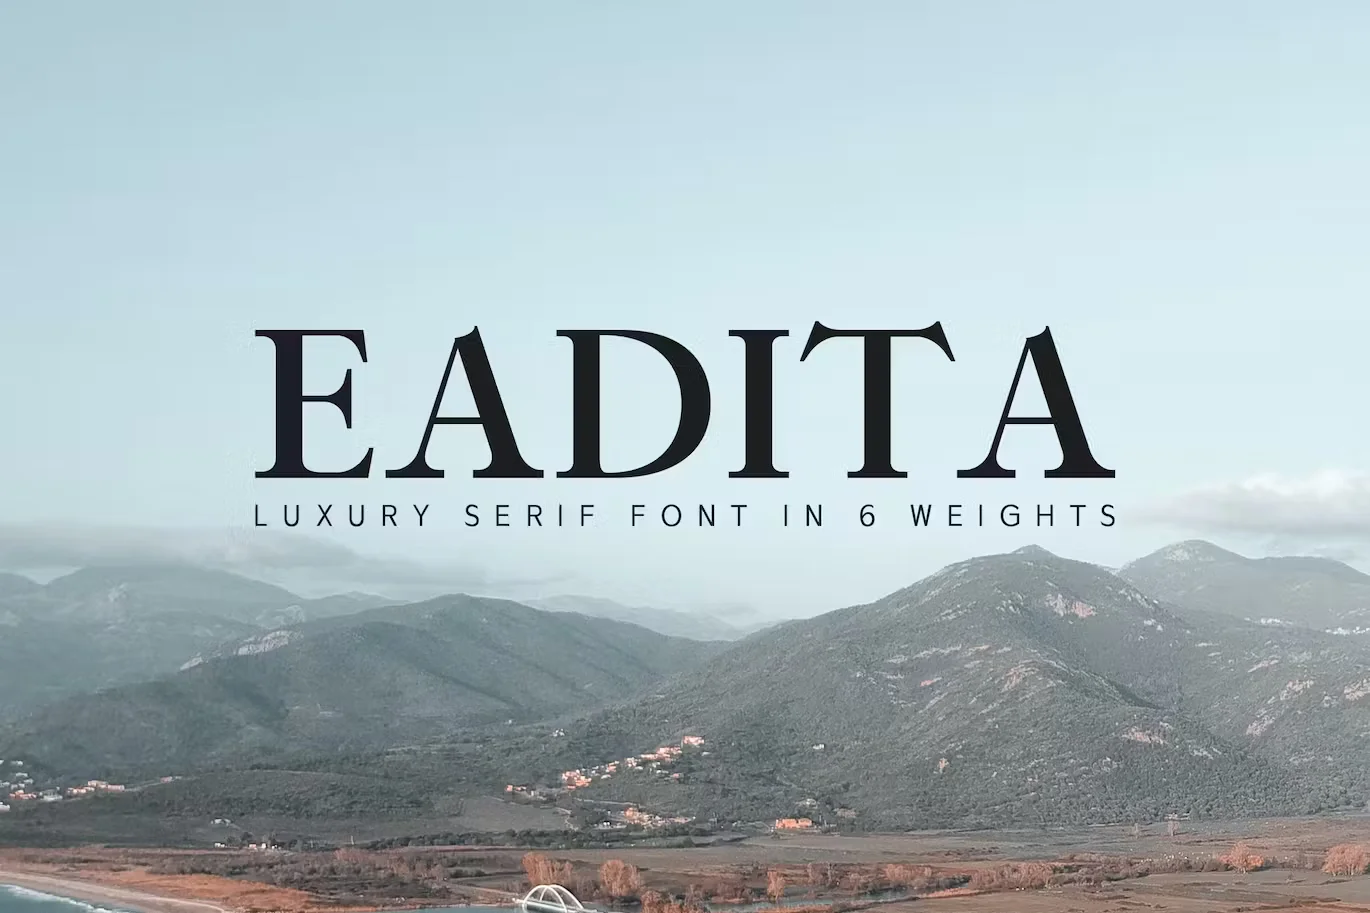 Eadita Luxury Serif Font Family